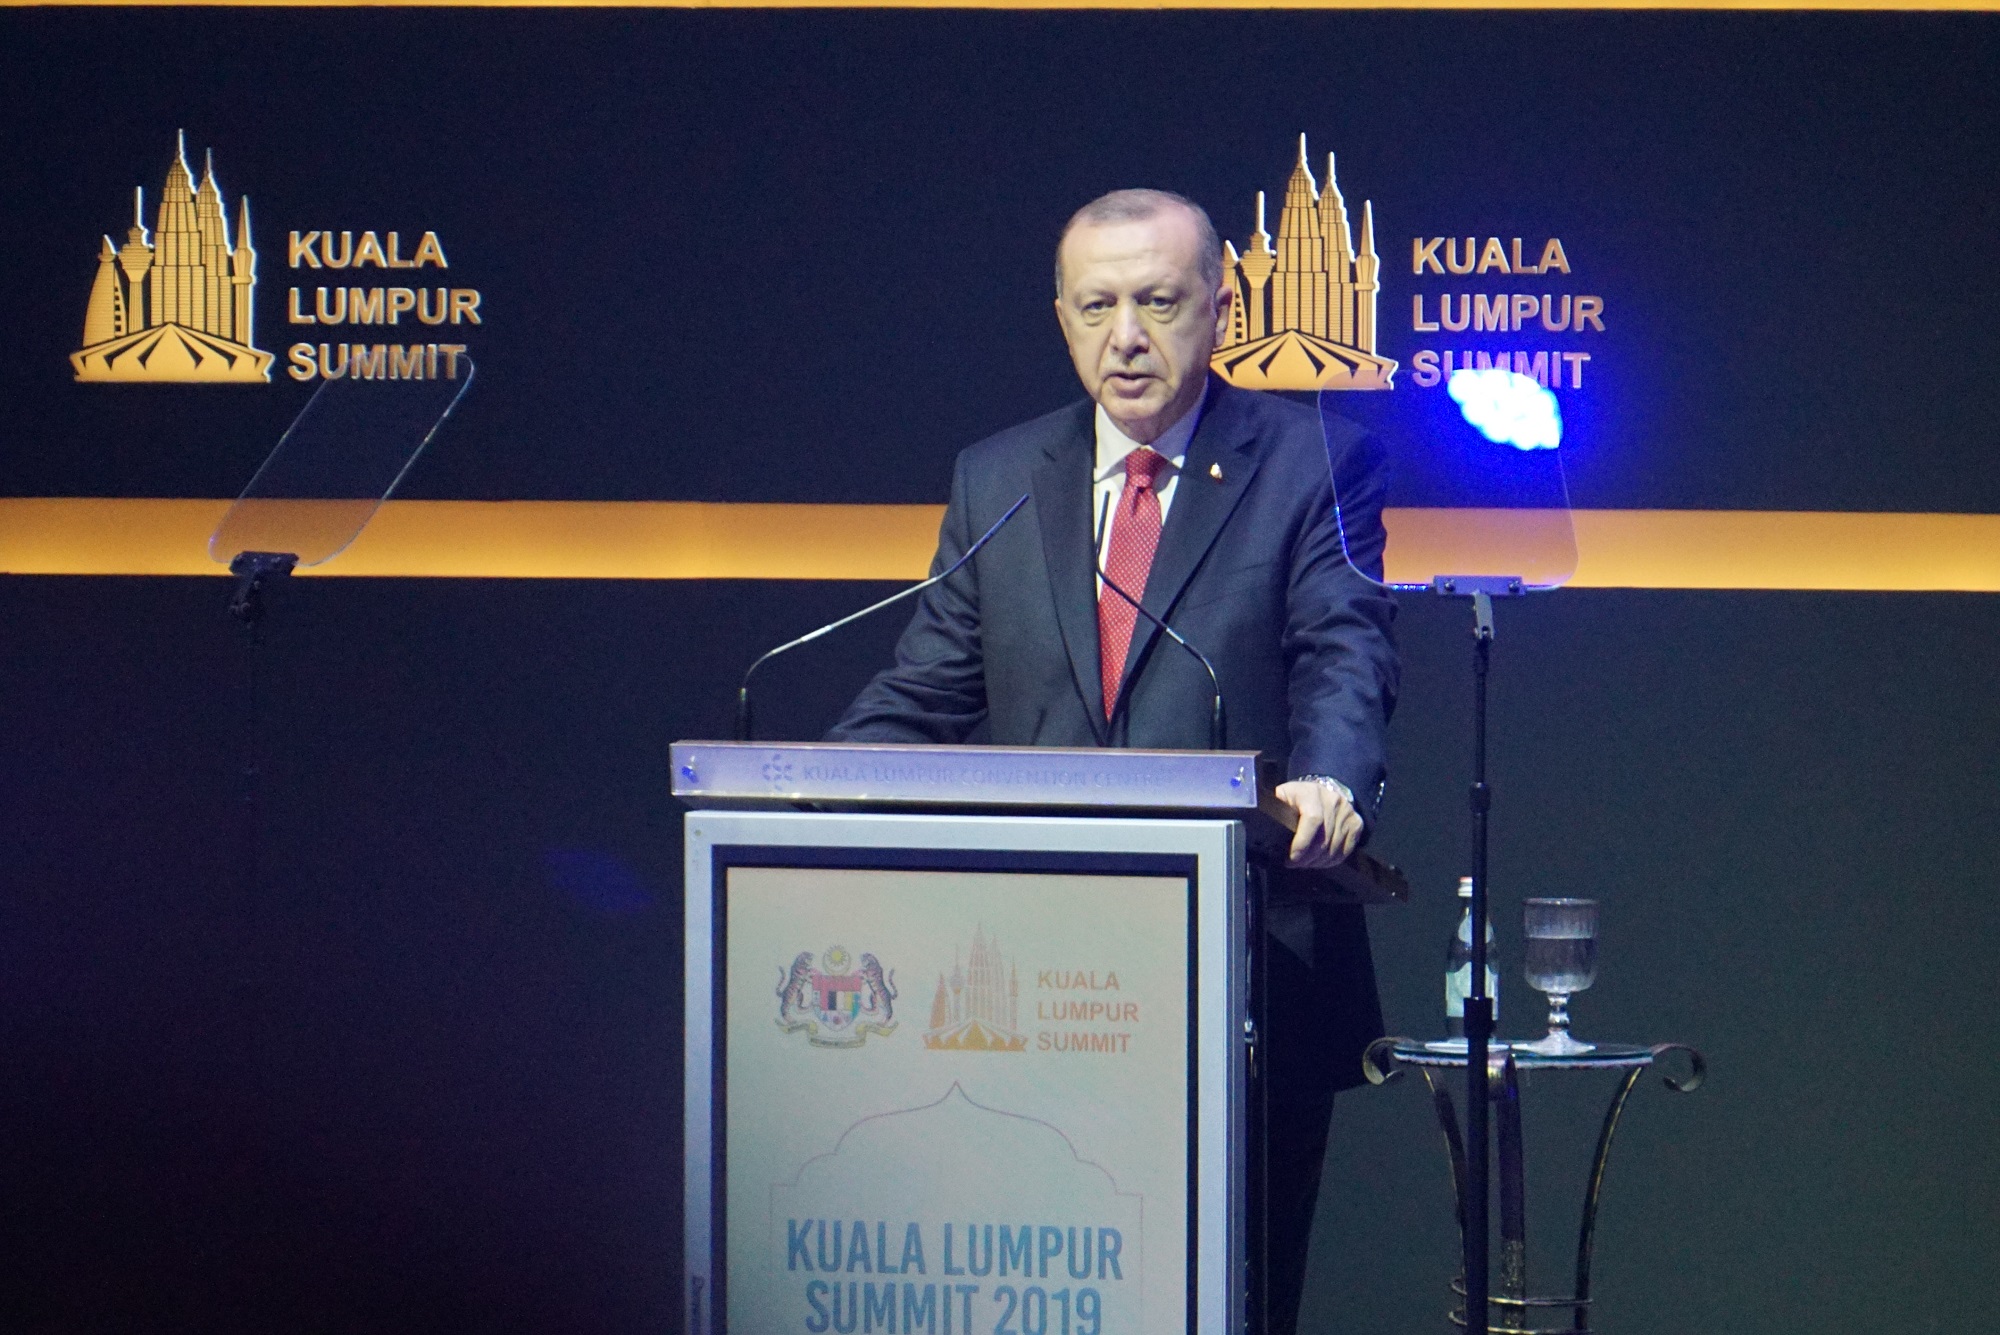 الرئيس التركي يلقي كلمته في قمة كوالالمبور